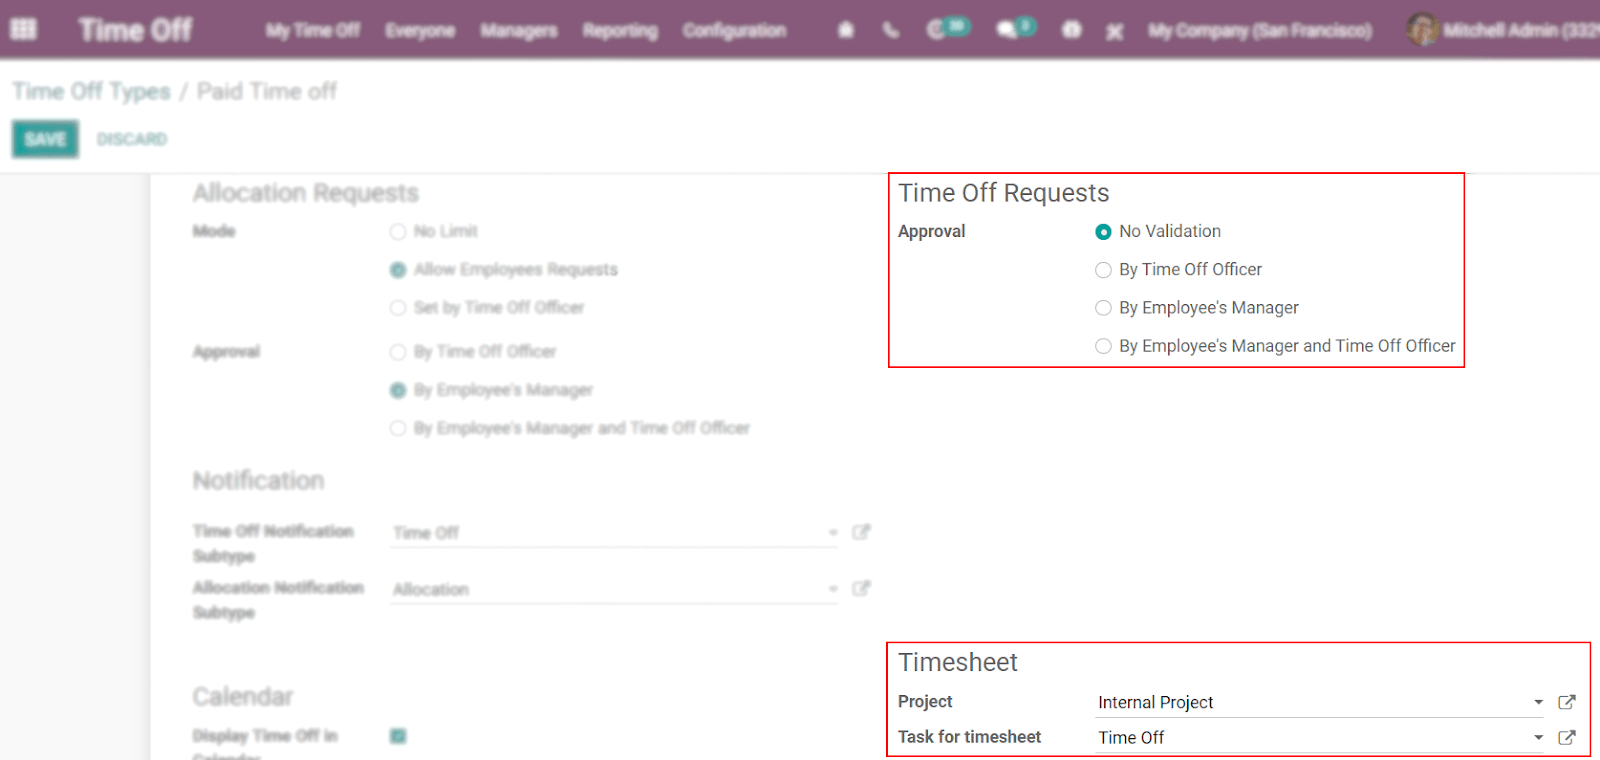 Vista del formulario de los tipos de tiempo personal en la que se destacan la aprobación de solicitudes de tiempo personal y la sección de hojas de horas en la aplicación de Tiempo personal de Odoo.